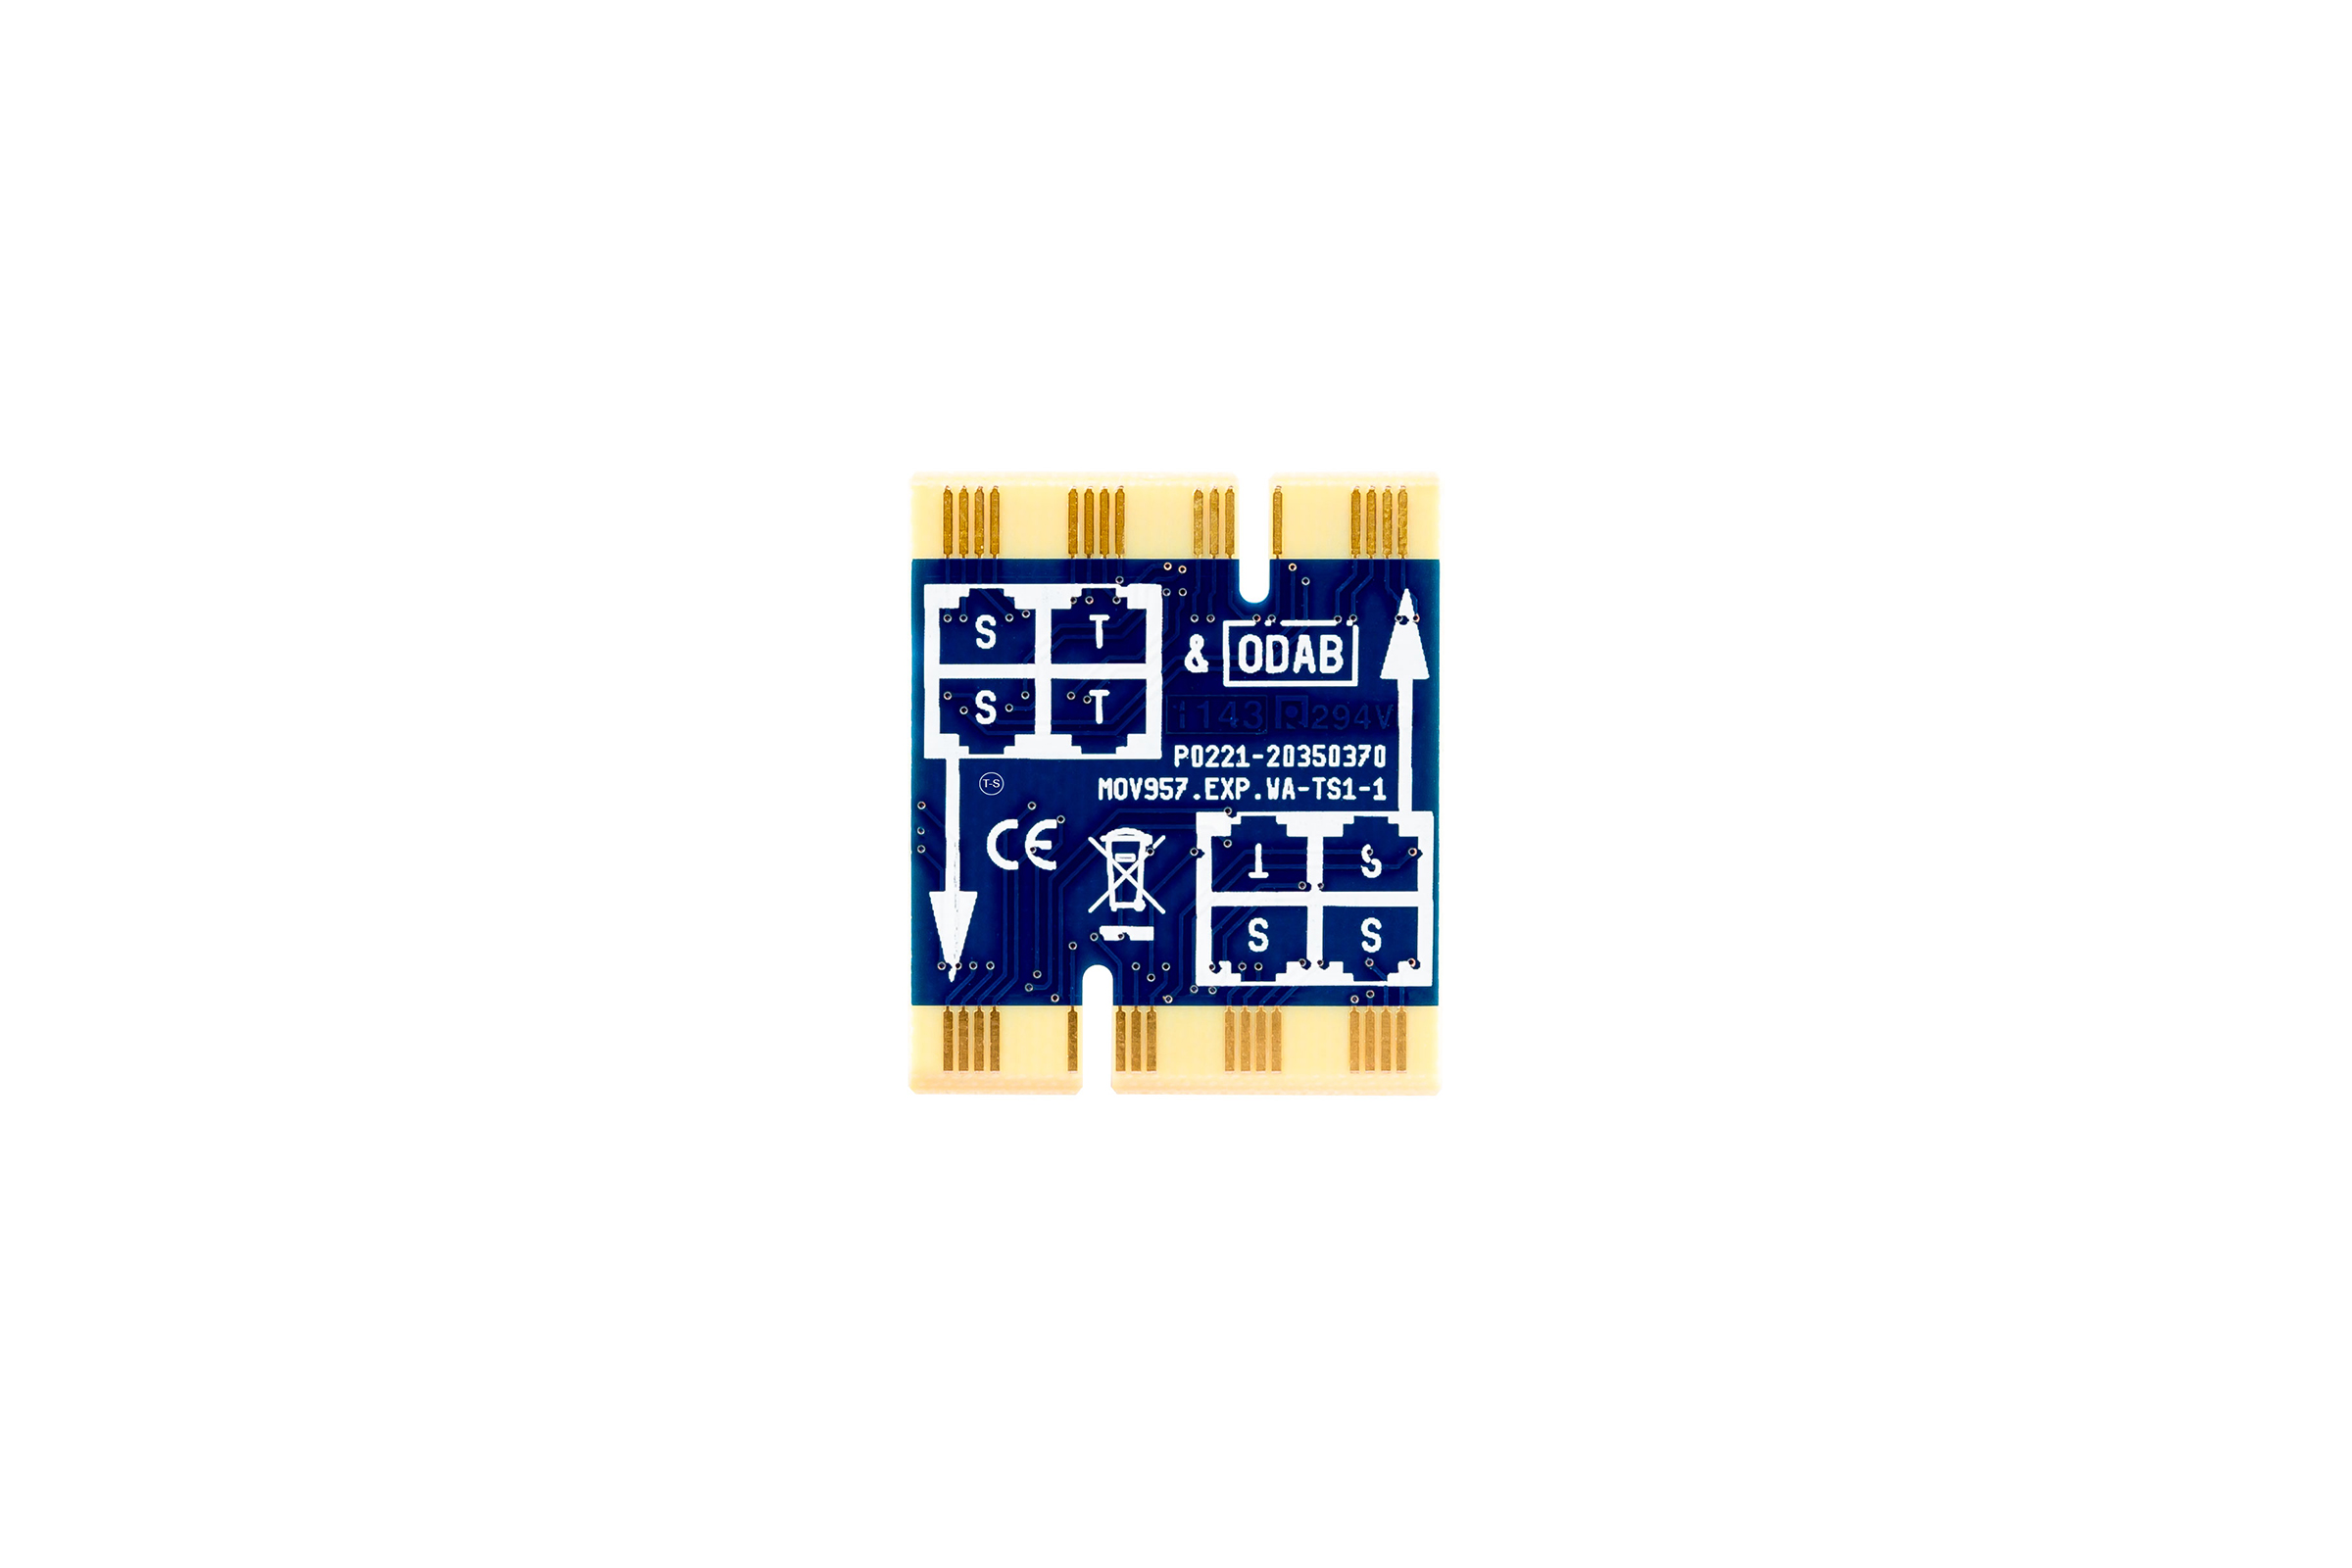 Produktbild - Mitel Wiring Adapter 4-Draht TS1